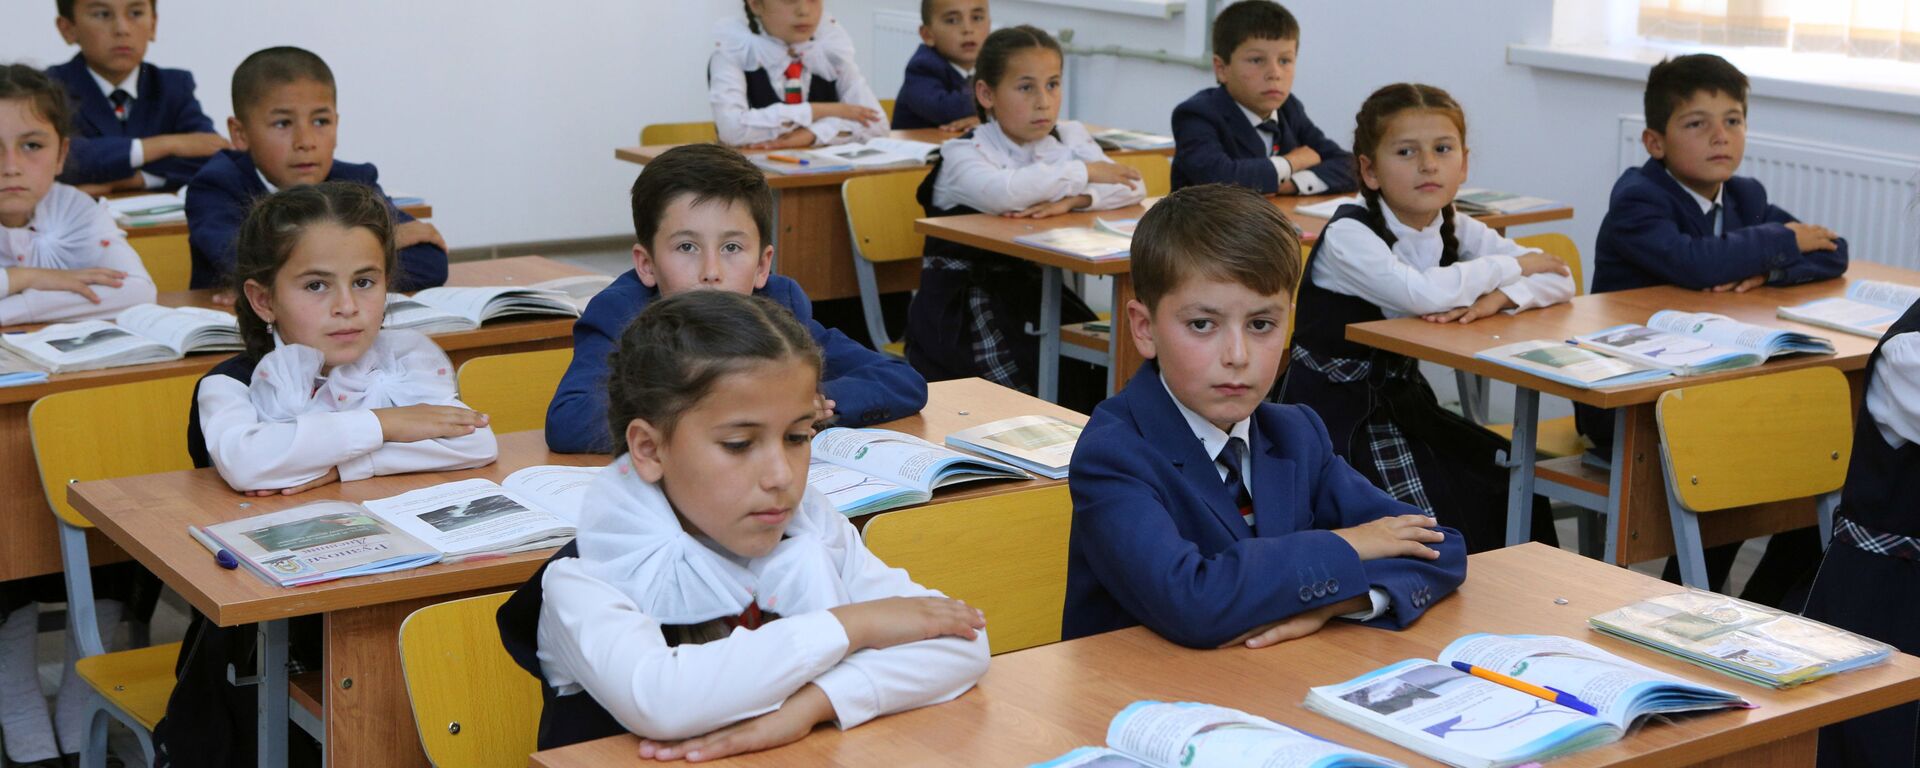 Ученики школы Дангаринского района - Sputnik Таджикистан, 1920, 08.03.2021